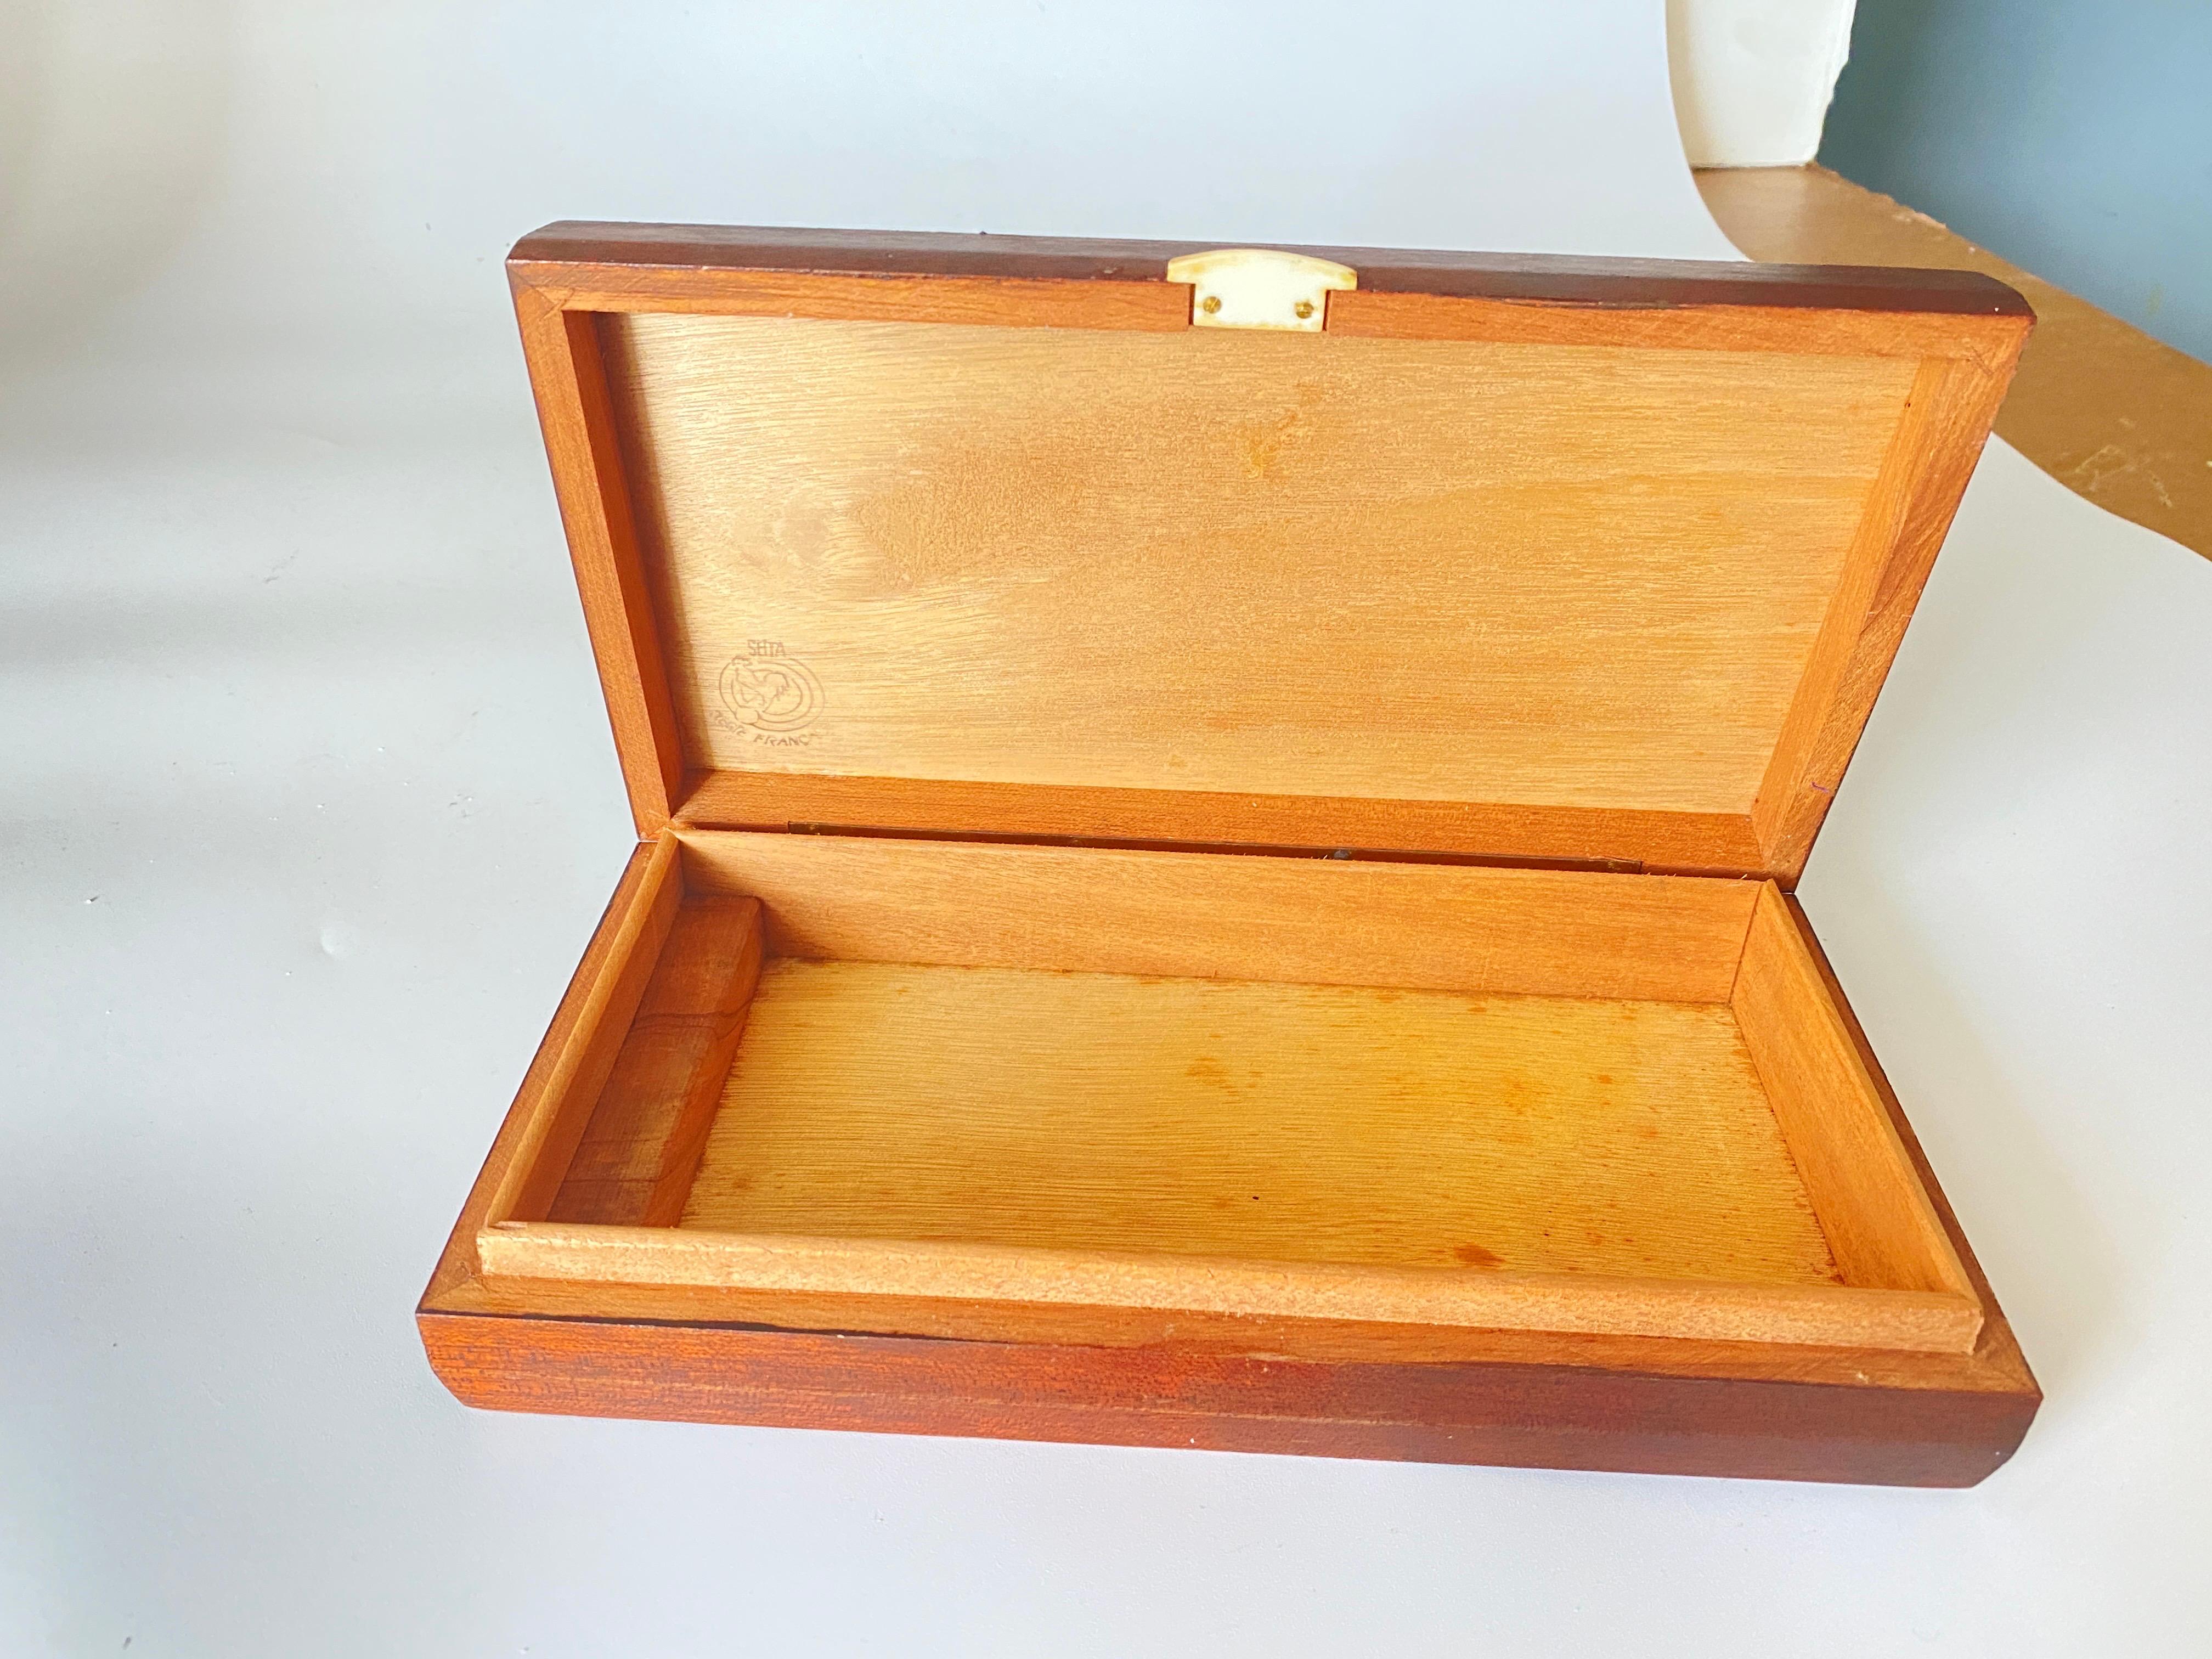 Diese Schachtel ist aus Frankreich. Es wurde 1940 hergestellt, es ist ein Art Deco Artikel. Der Kasten ist aus Holz.
Es ist eine Zigarrenkiste, kann aber auch als Dokumentationskiste verwendet werden, zu Hause oder auf dem Schreibtisch.